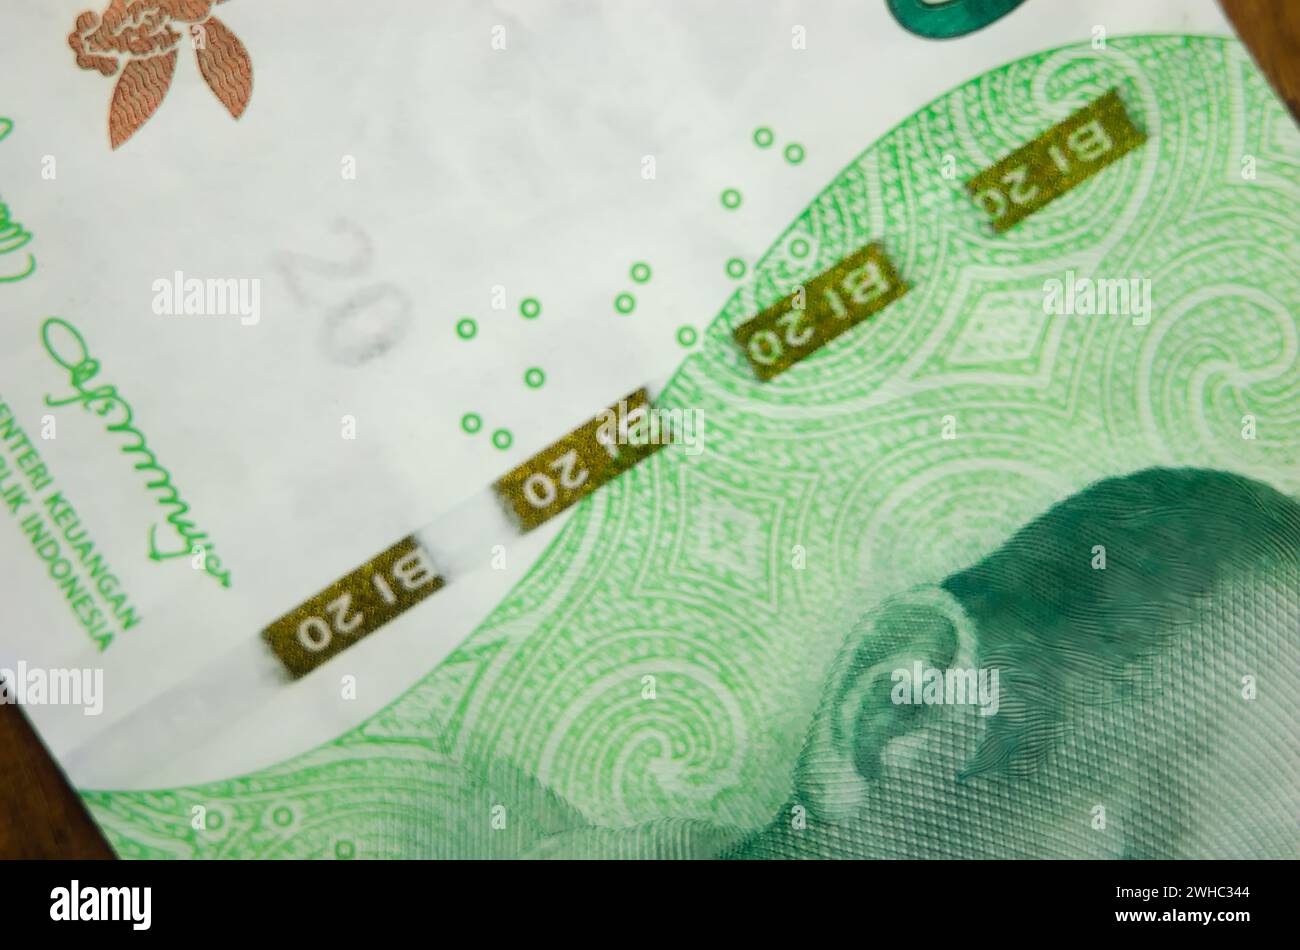 Makrofotografie von 20.000 IDR-Banknoten. Nahaufnahme einer indonesischen 20.000-Rupiah-Banknote mit Sicherheitsfaden. Rupiah ist die offizielle Curr Stockfoto